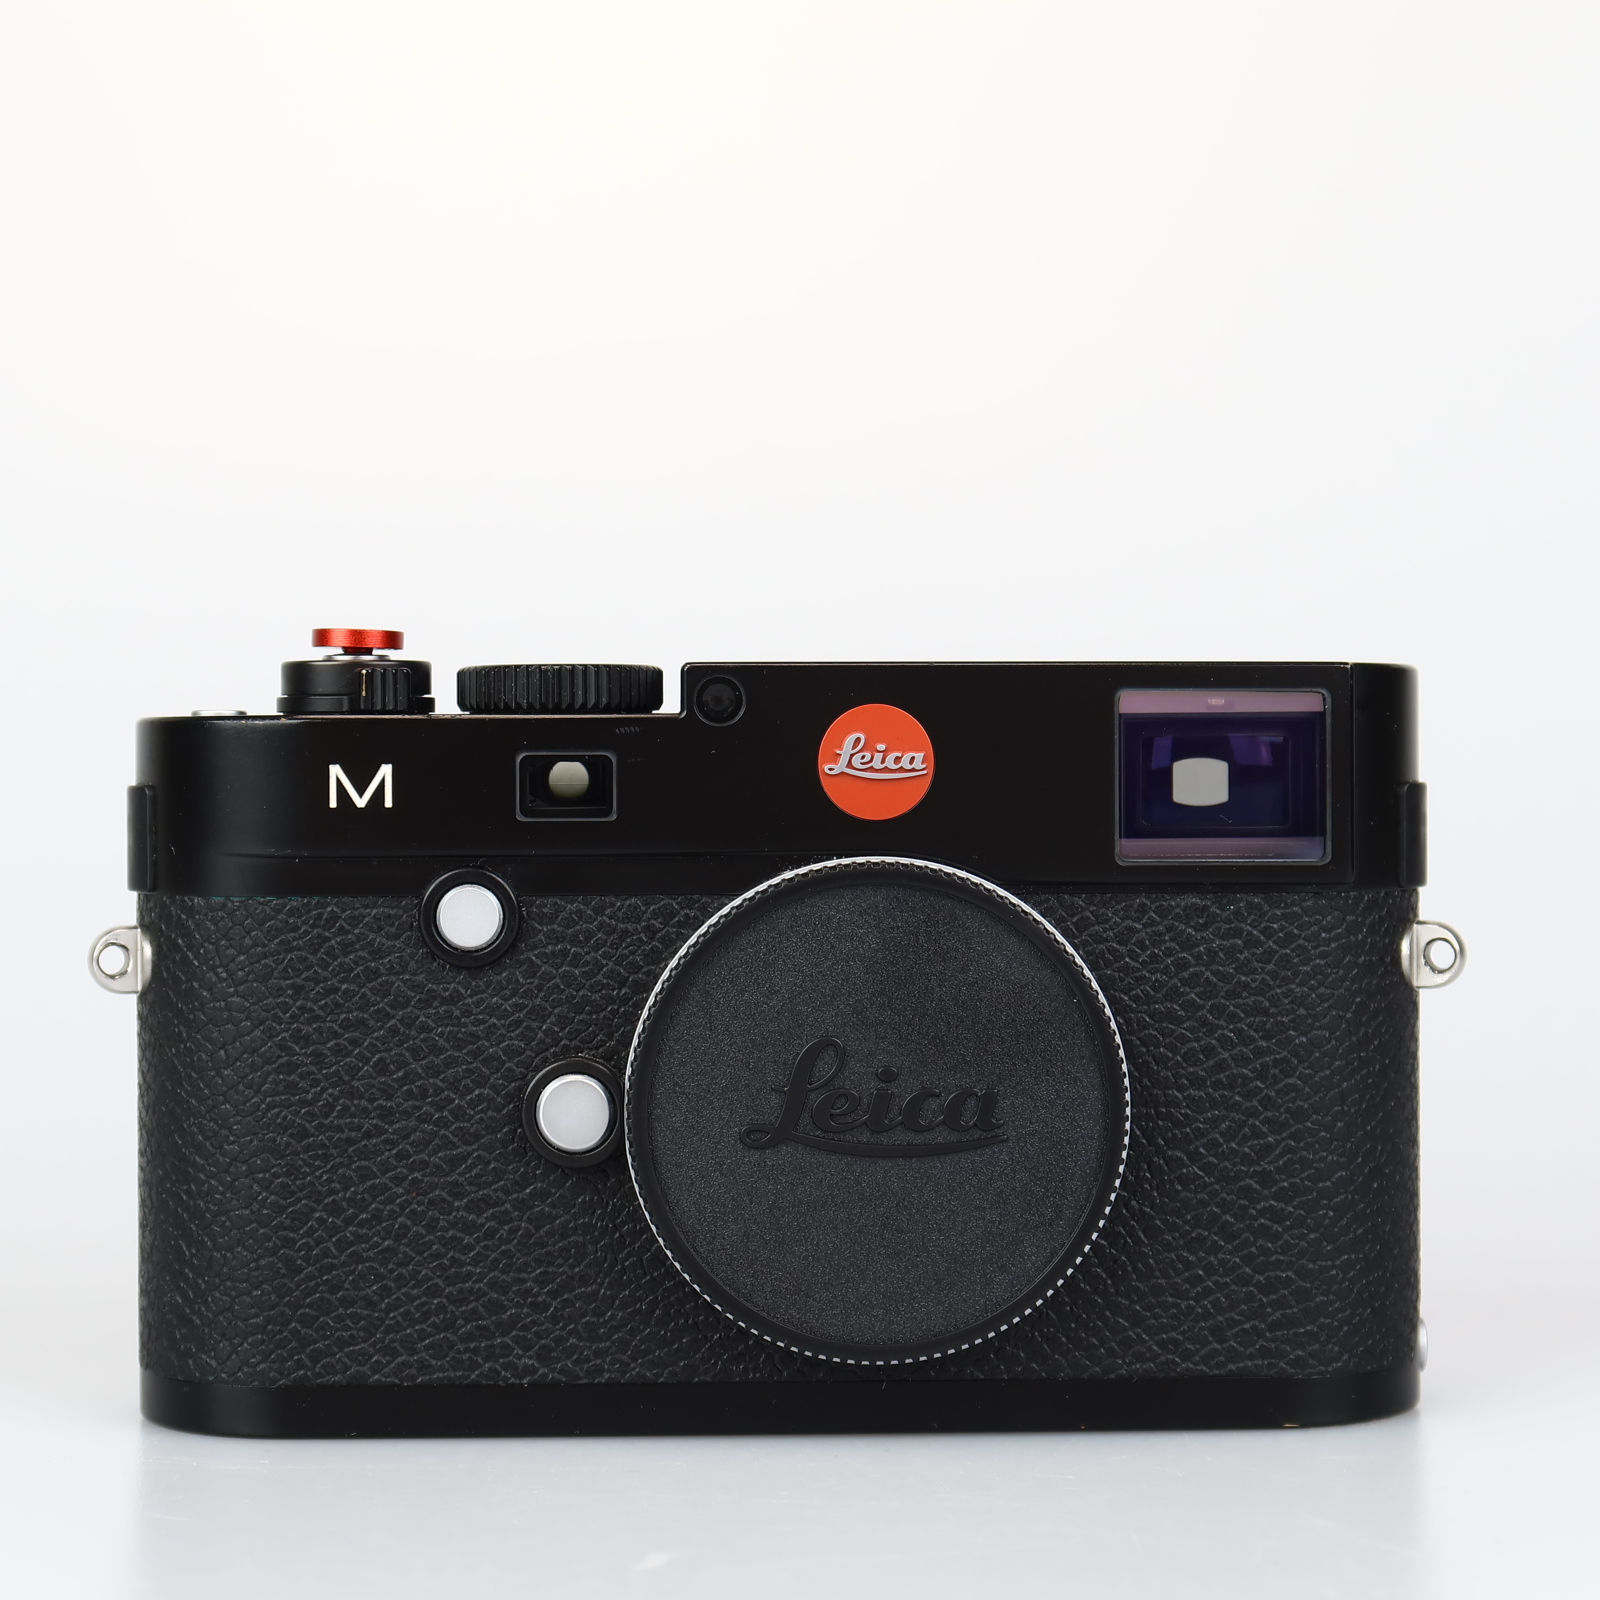 (Myyty) Leica M (Typ 240) (Käytetty) (Sis. ALV)